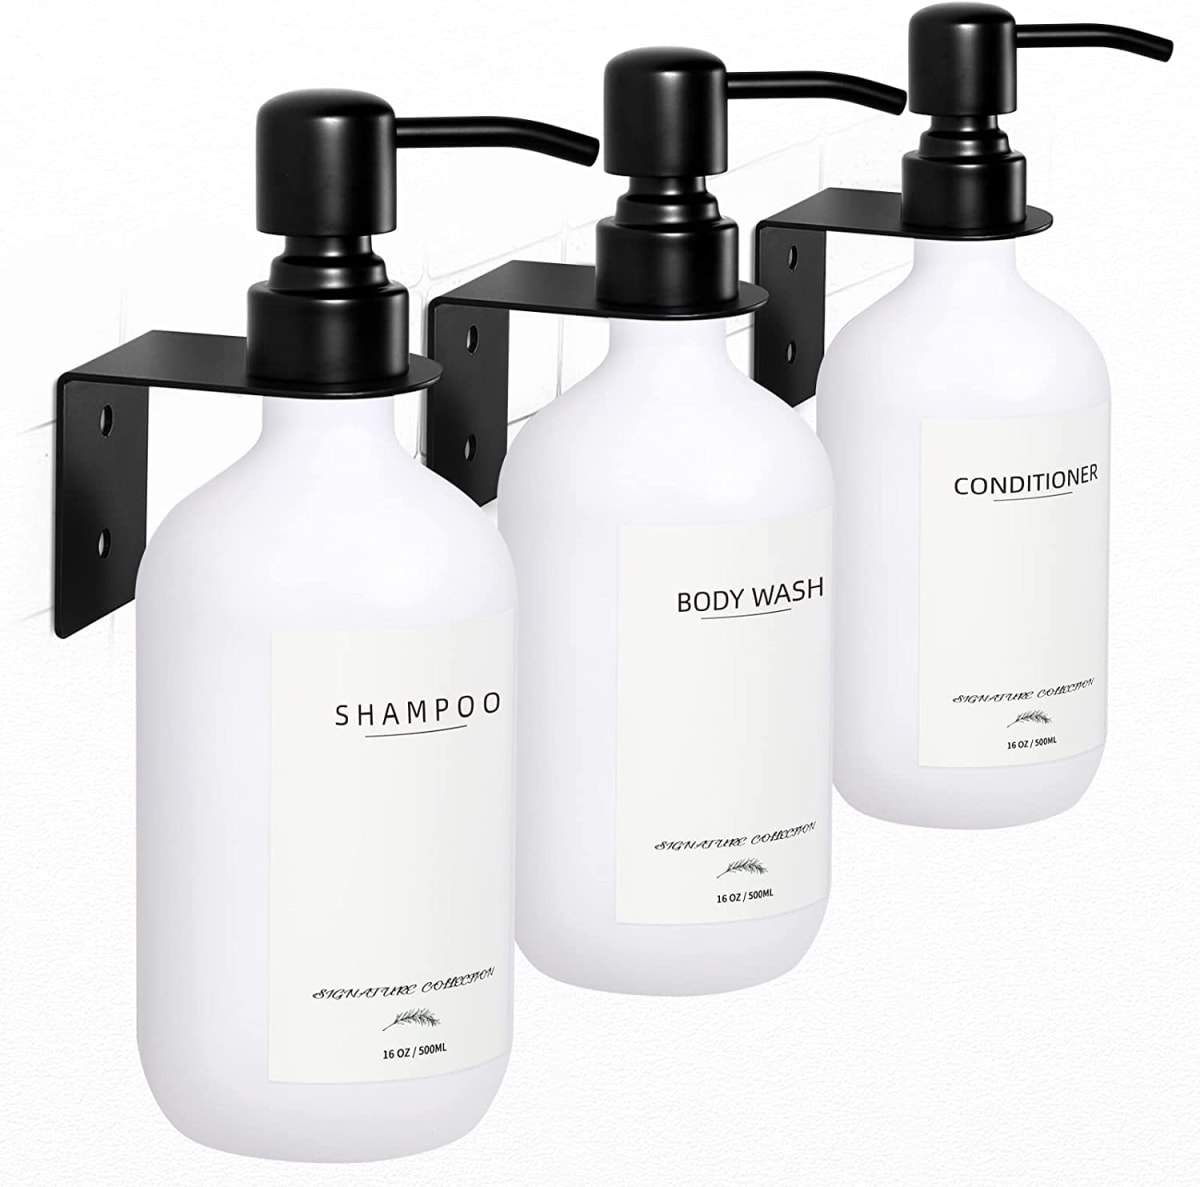 Shampoo Dispenser for Shower Wall 3 Chamber